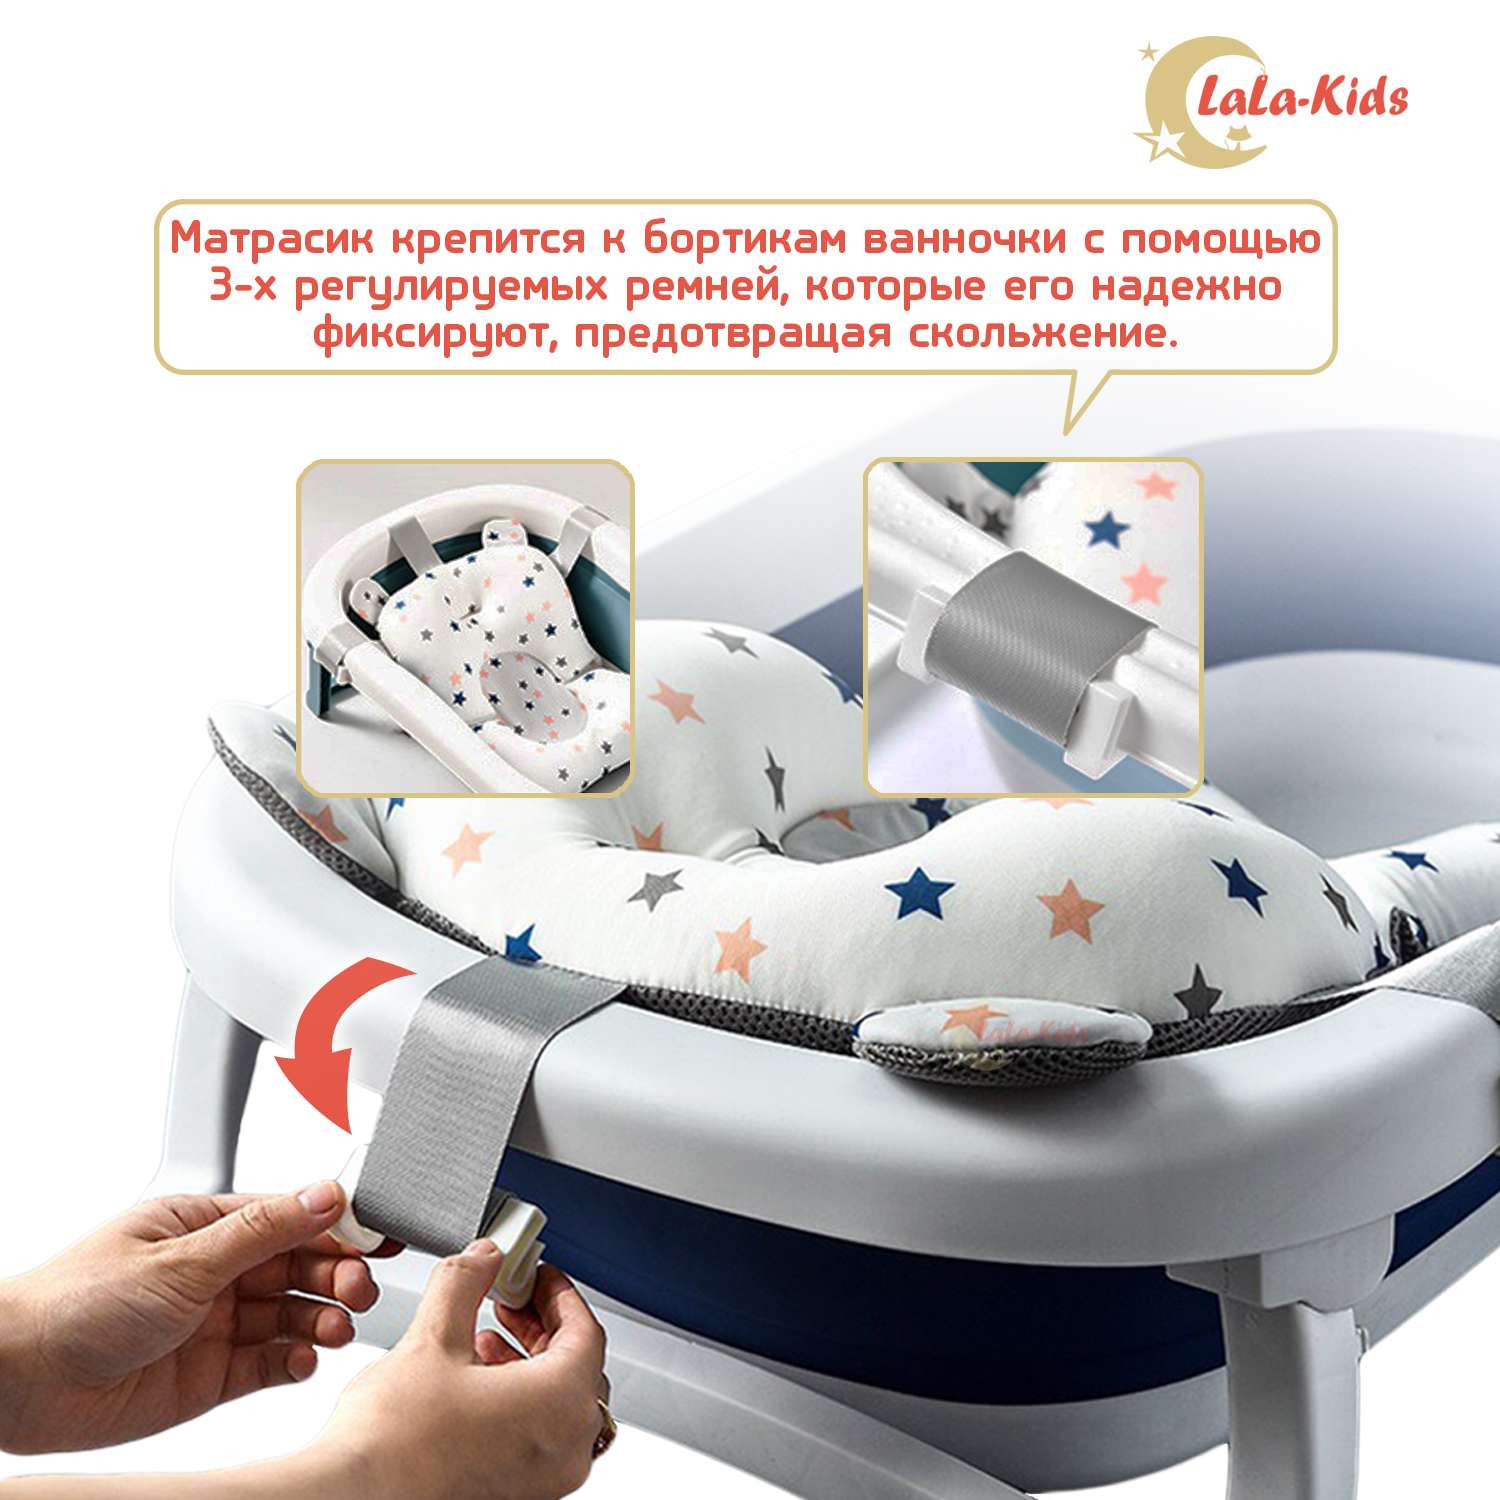 Детская ванночка LaLa-Kids складная с матрасиком для купания новорожденных - фото 7